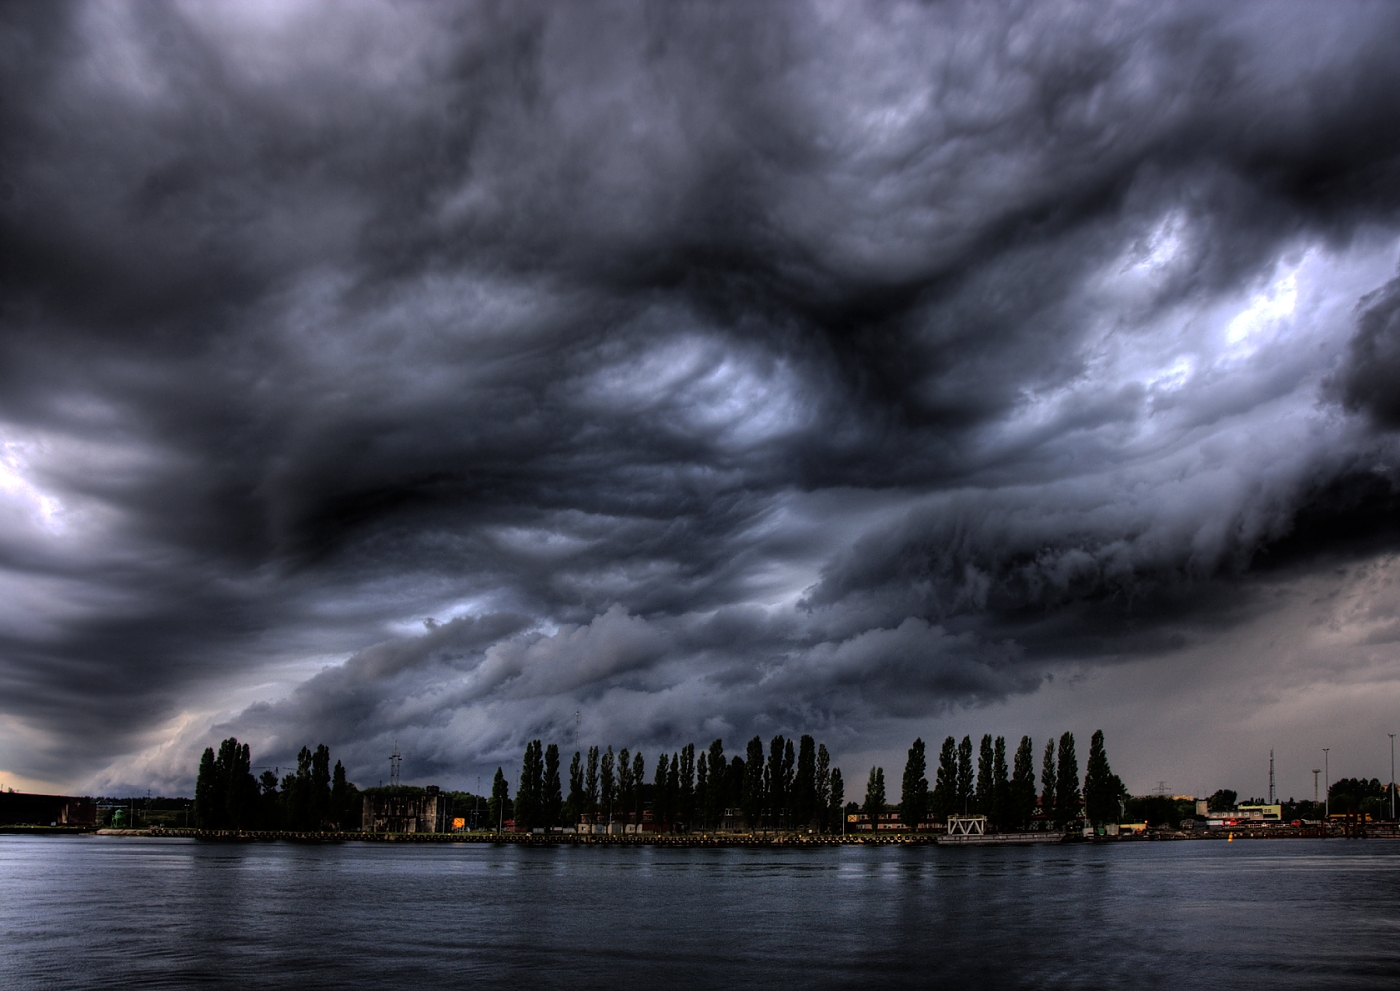 Před bouří v přístavu - Swinoujscie - Polsko